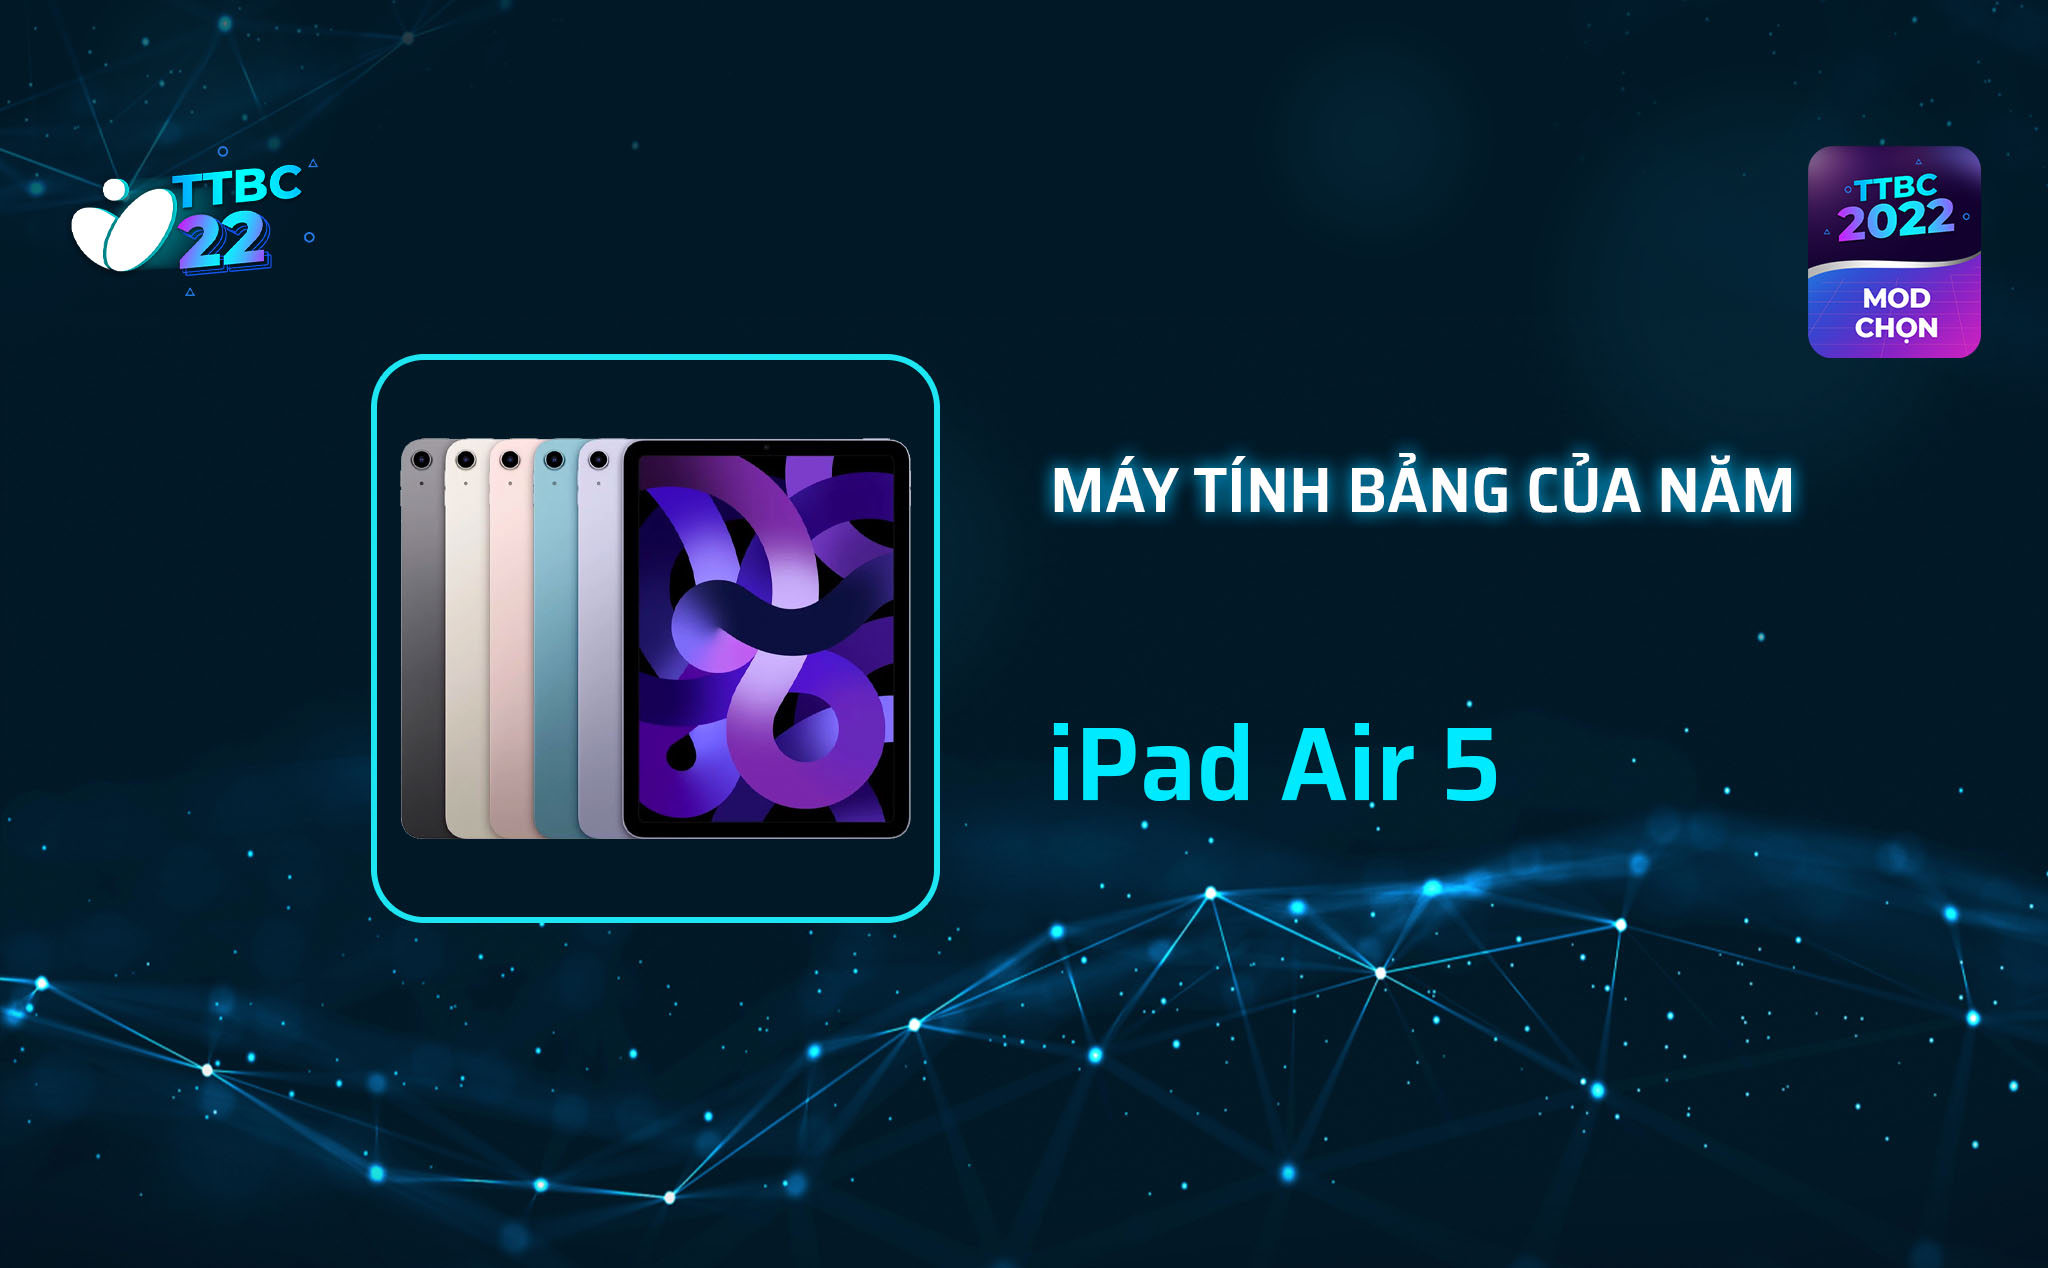 TTBC22 - Mod choice: iPad Air 5 là máy tính bảng của năm